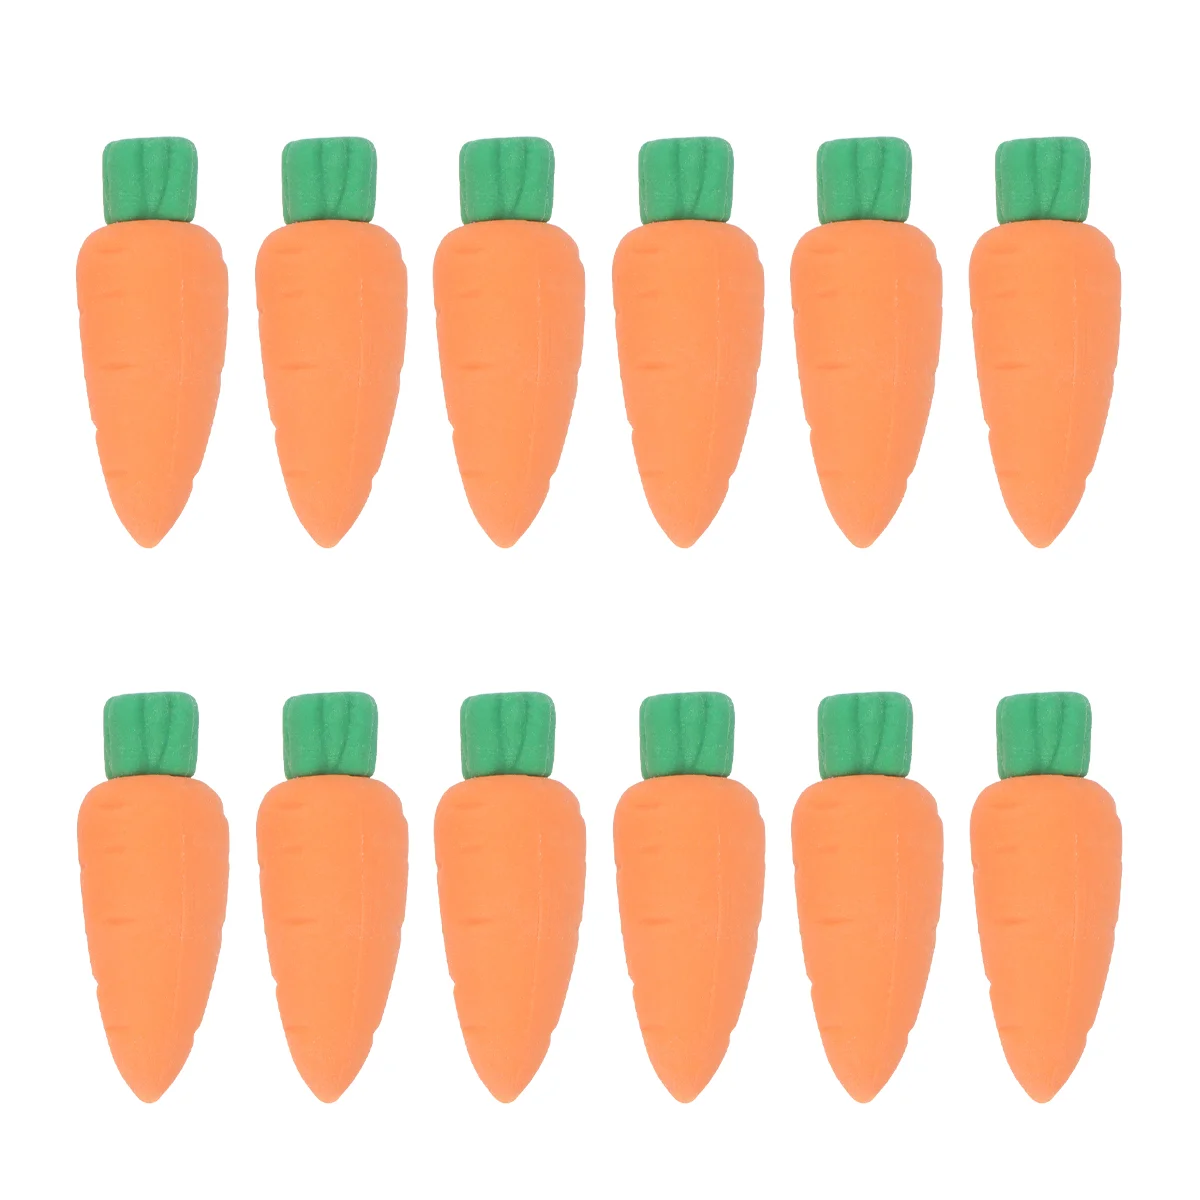 

Ластики в виде моркови для детей, миниатюрные ластики, 30 шт. крошечных игрушек, фруктов, канцелярские принадлежности для класса, награды, искусственные сувениры